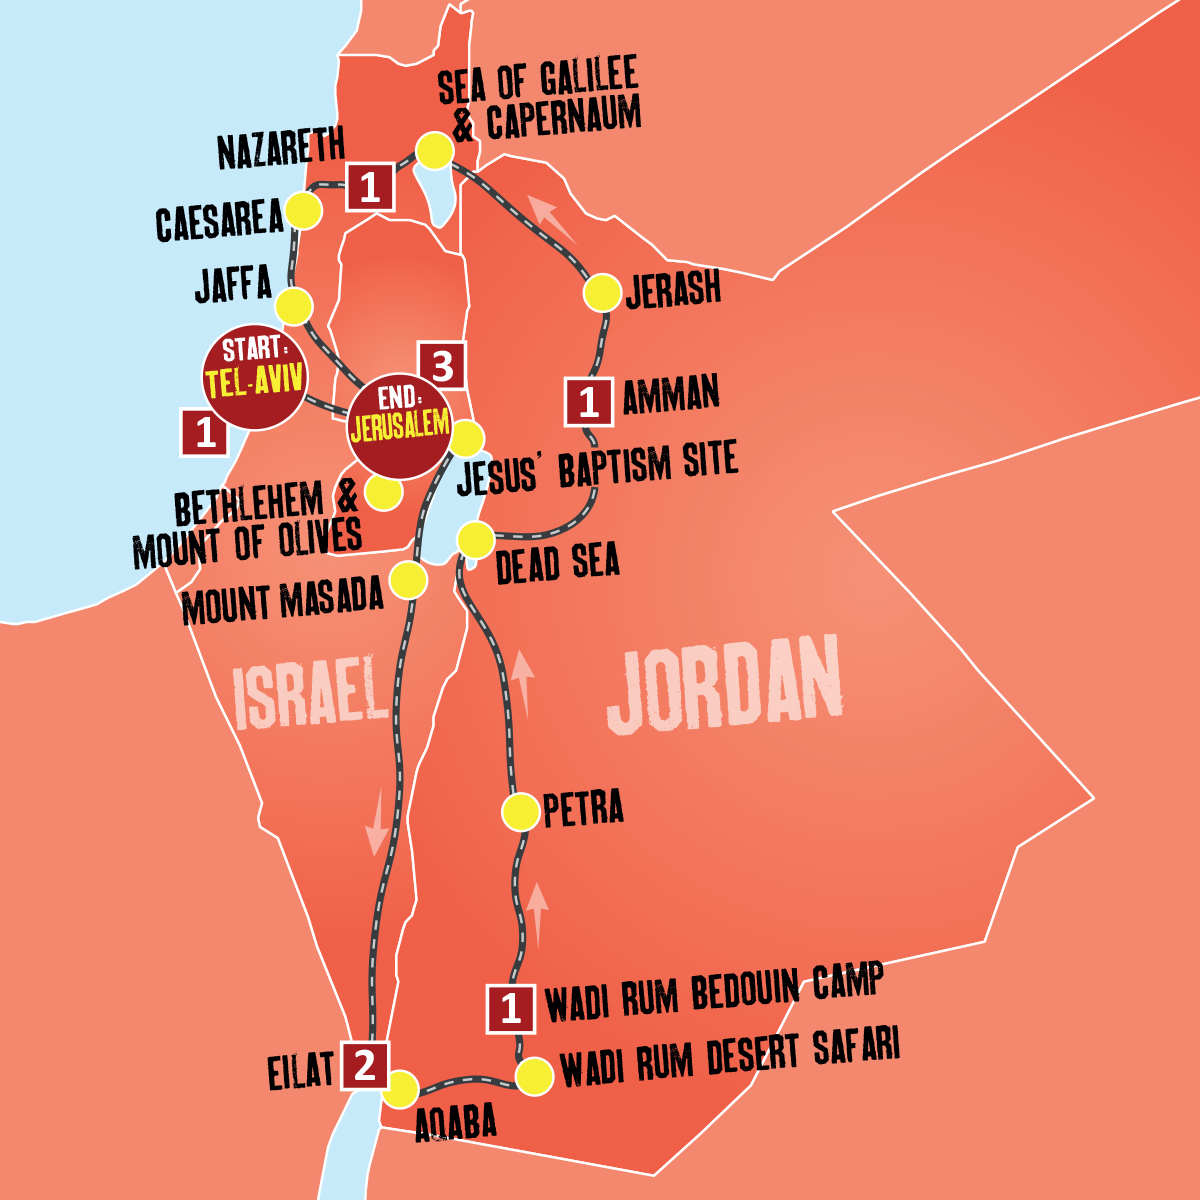 Jordan tour packages - Expat Explore